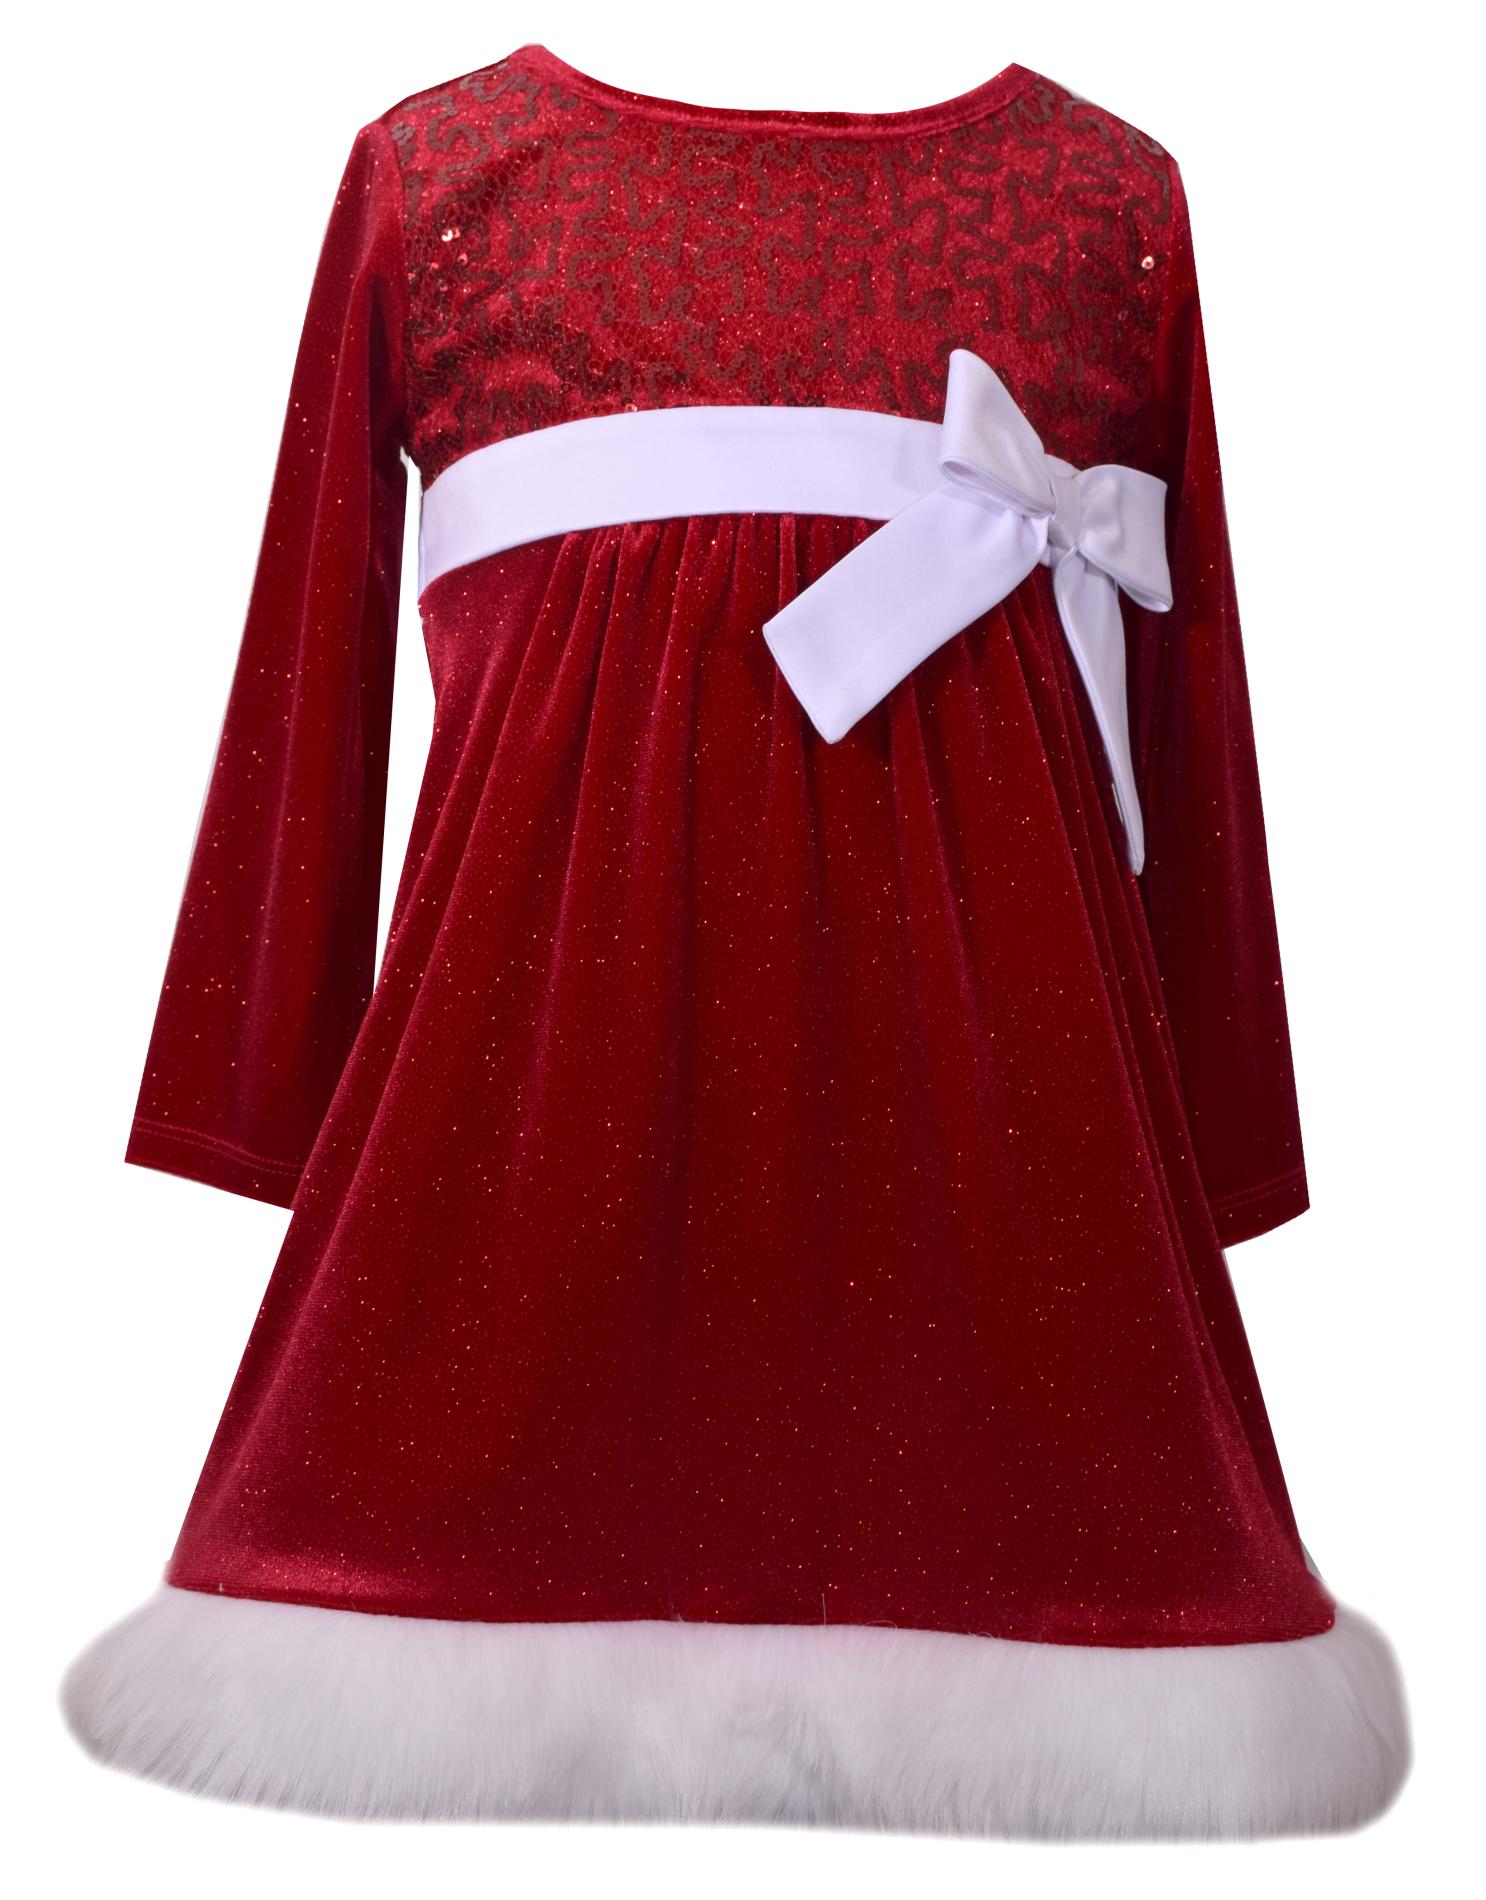 Ashley Ann Infant & Toddler Girl's Christmas Dress